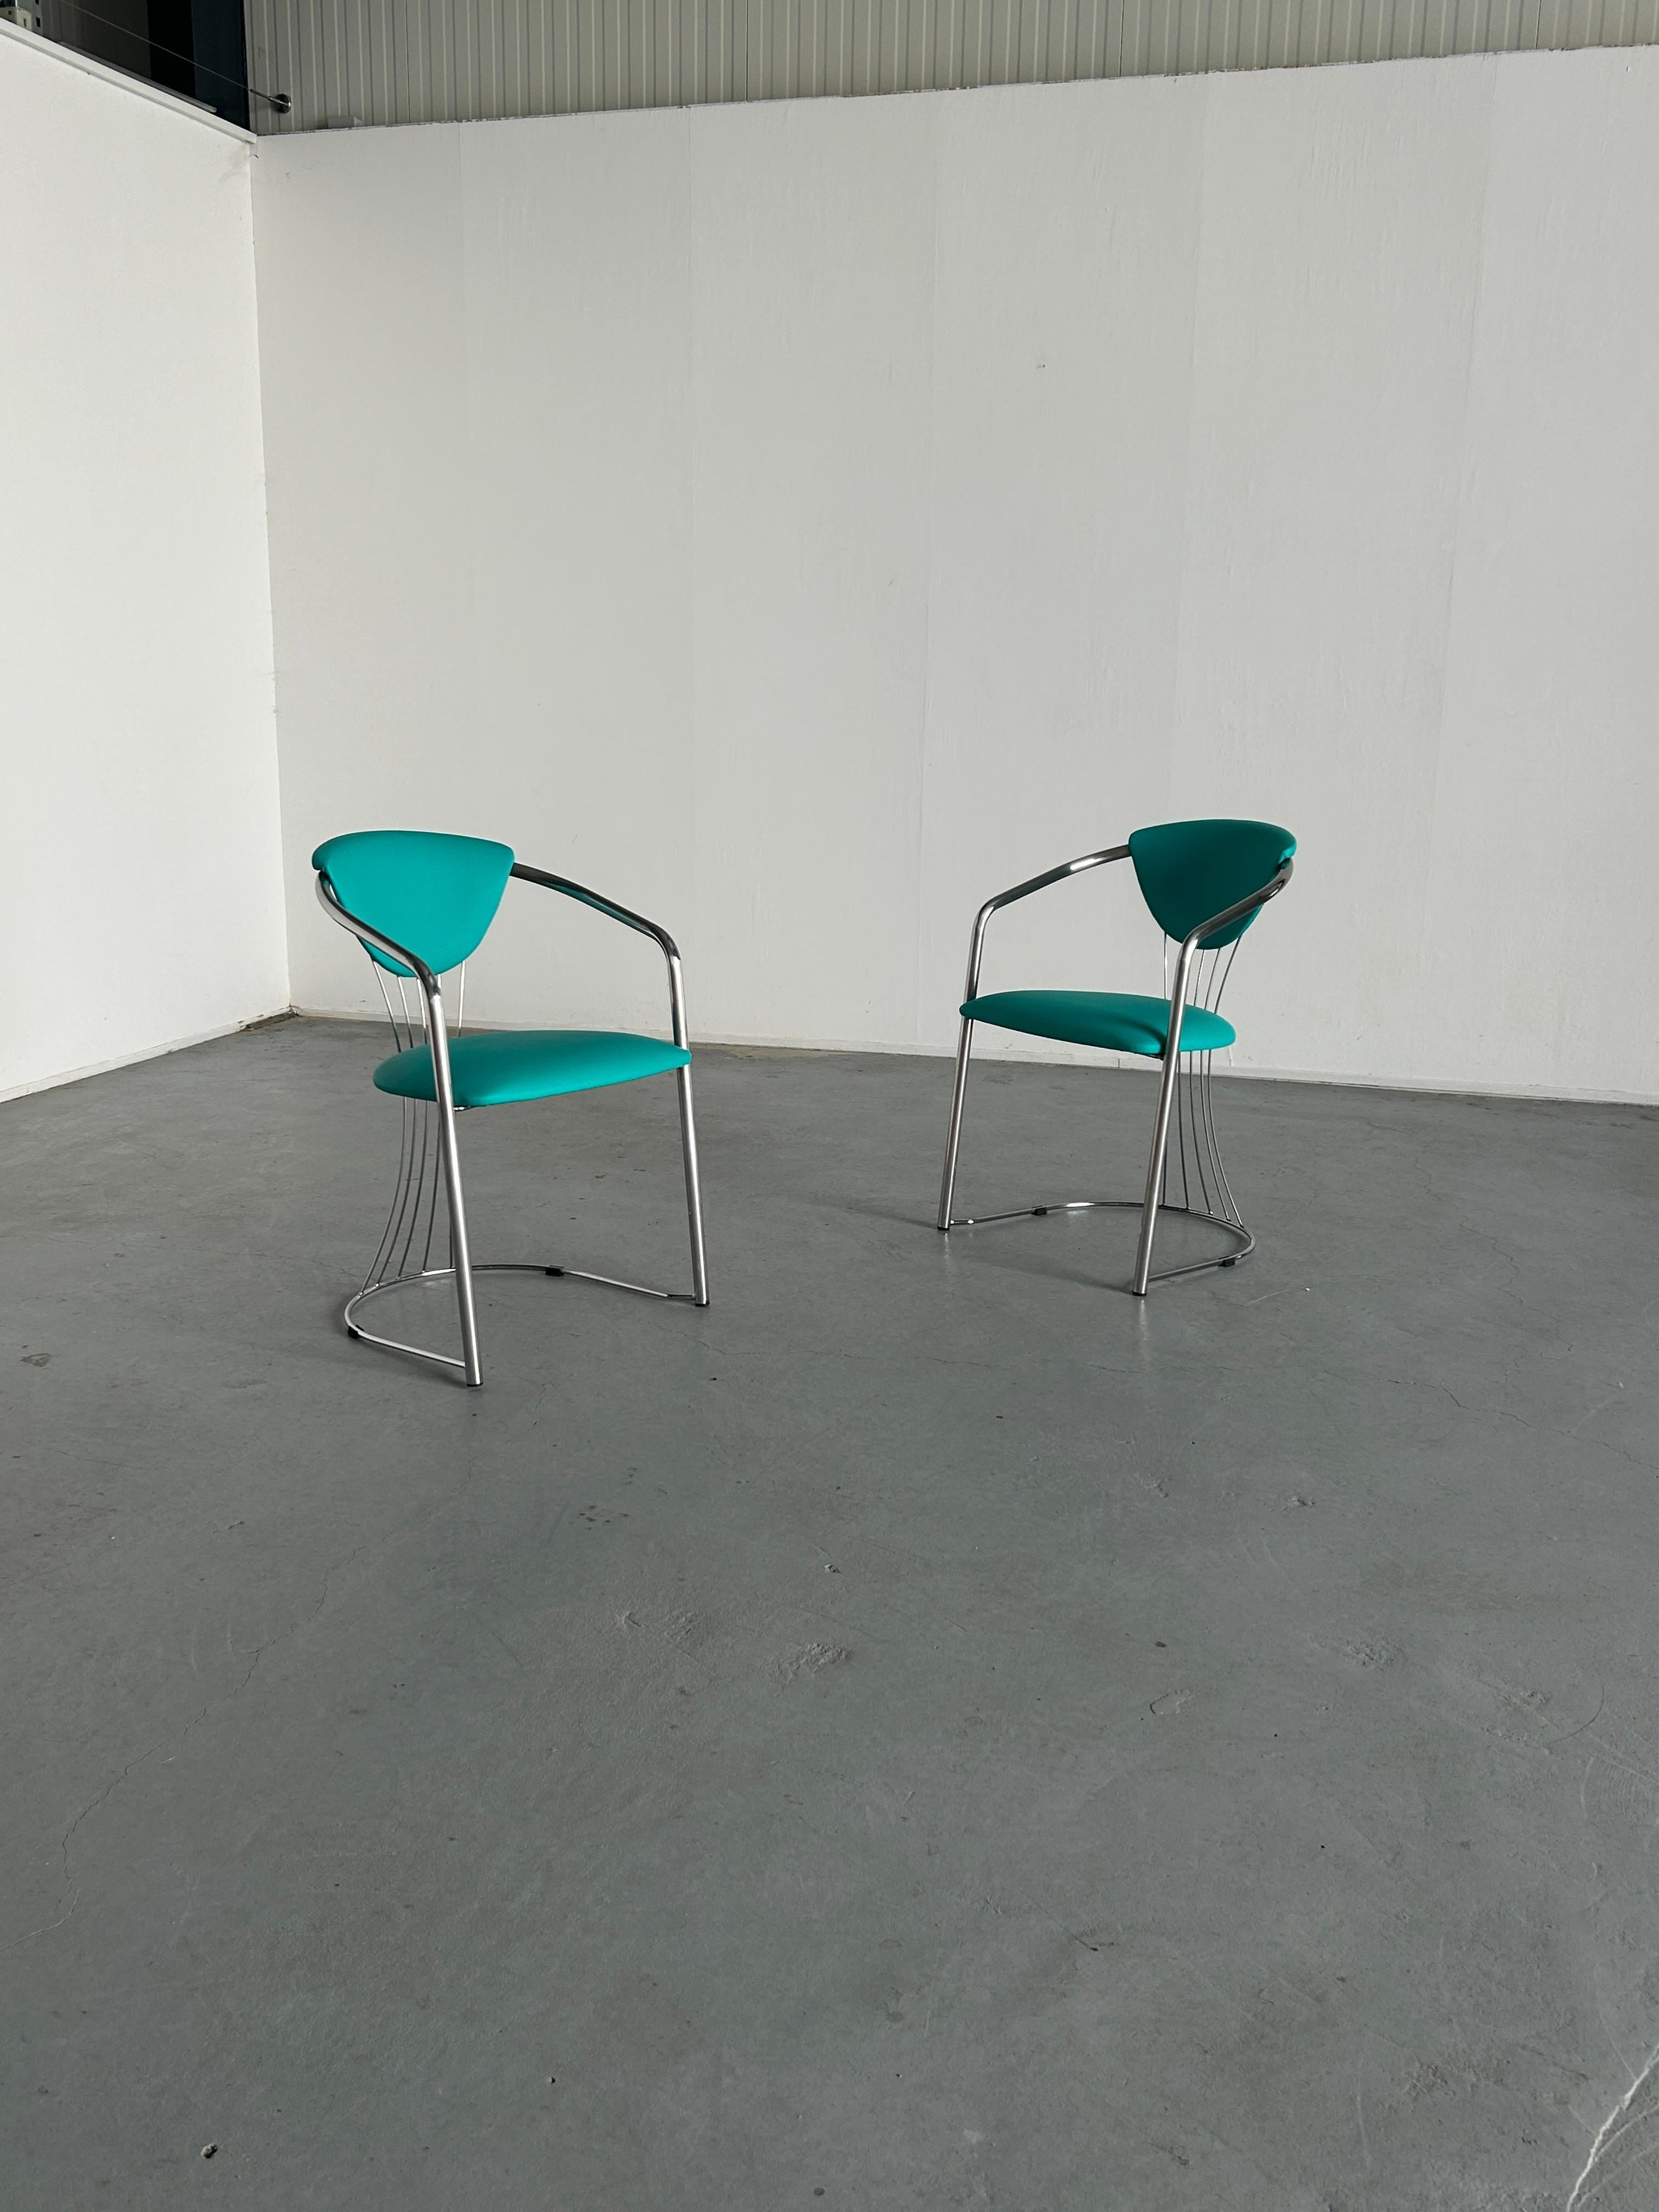 Deux chaises de salle à manger italiennes vintage en chrome et faux cuir vert menthe/vert, produites par Effezeta, Italie, années 1990.

Fabriqué en qualité et en bon état vintage avec des signes d'âge attendus, comme on peut le voir sur les